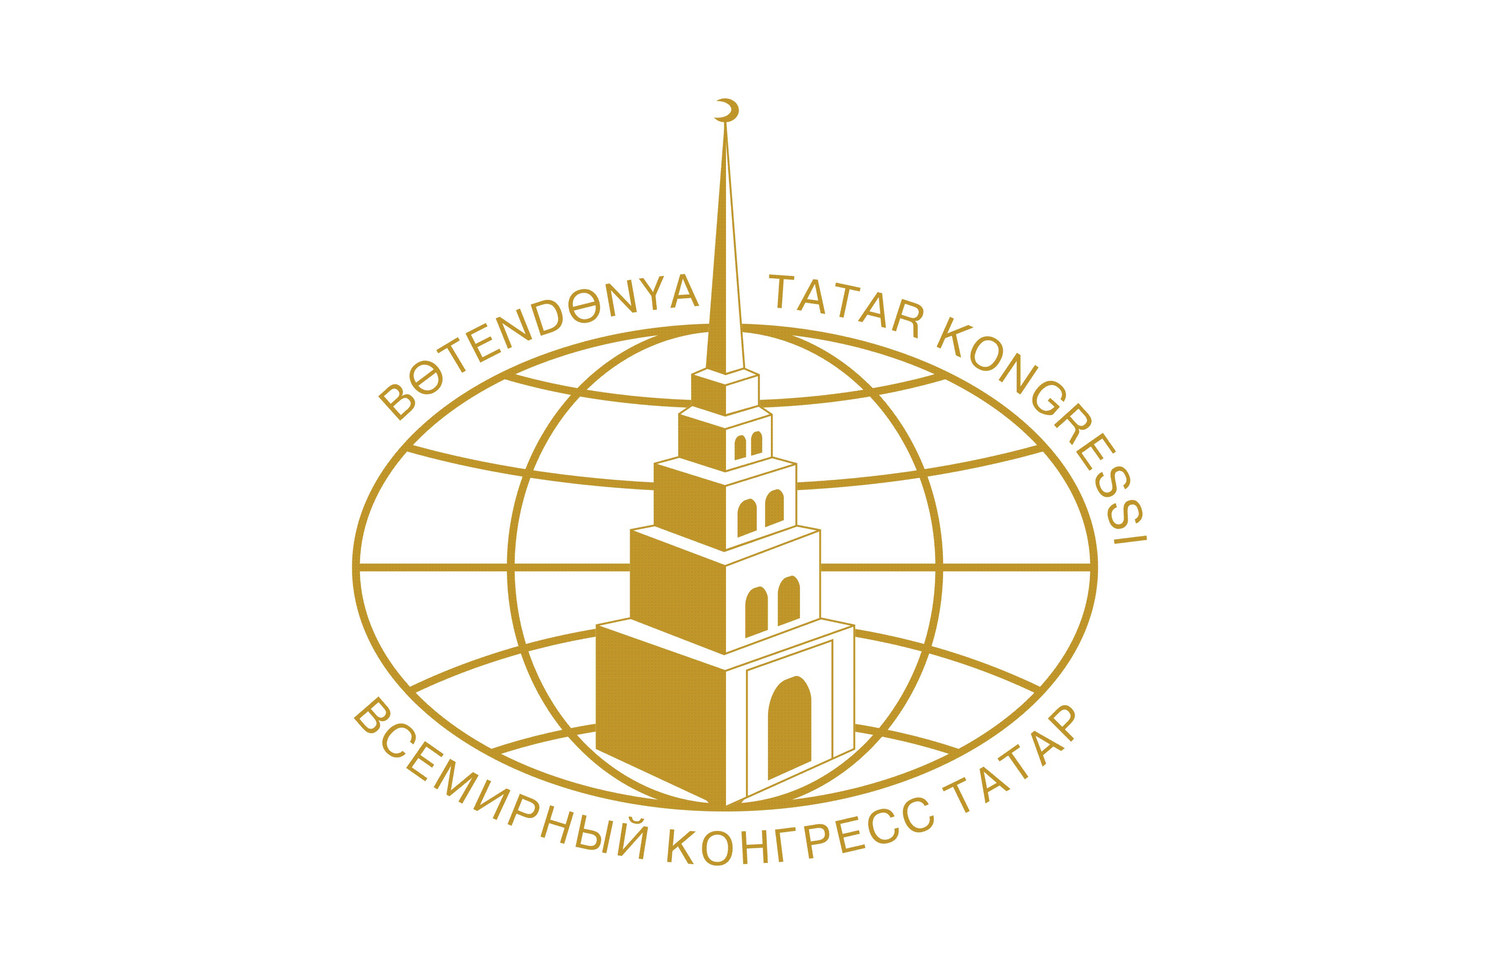 В ближайшее время будет объявлен конкурс по исполнению проповедей на татарском языке